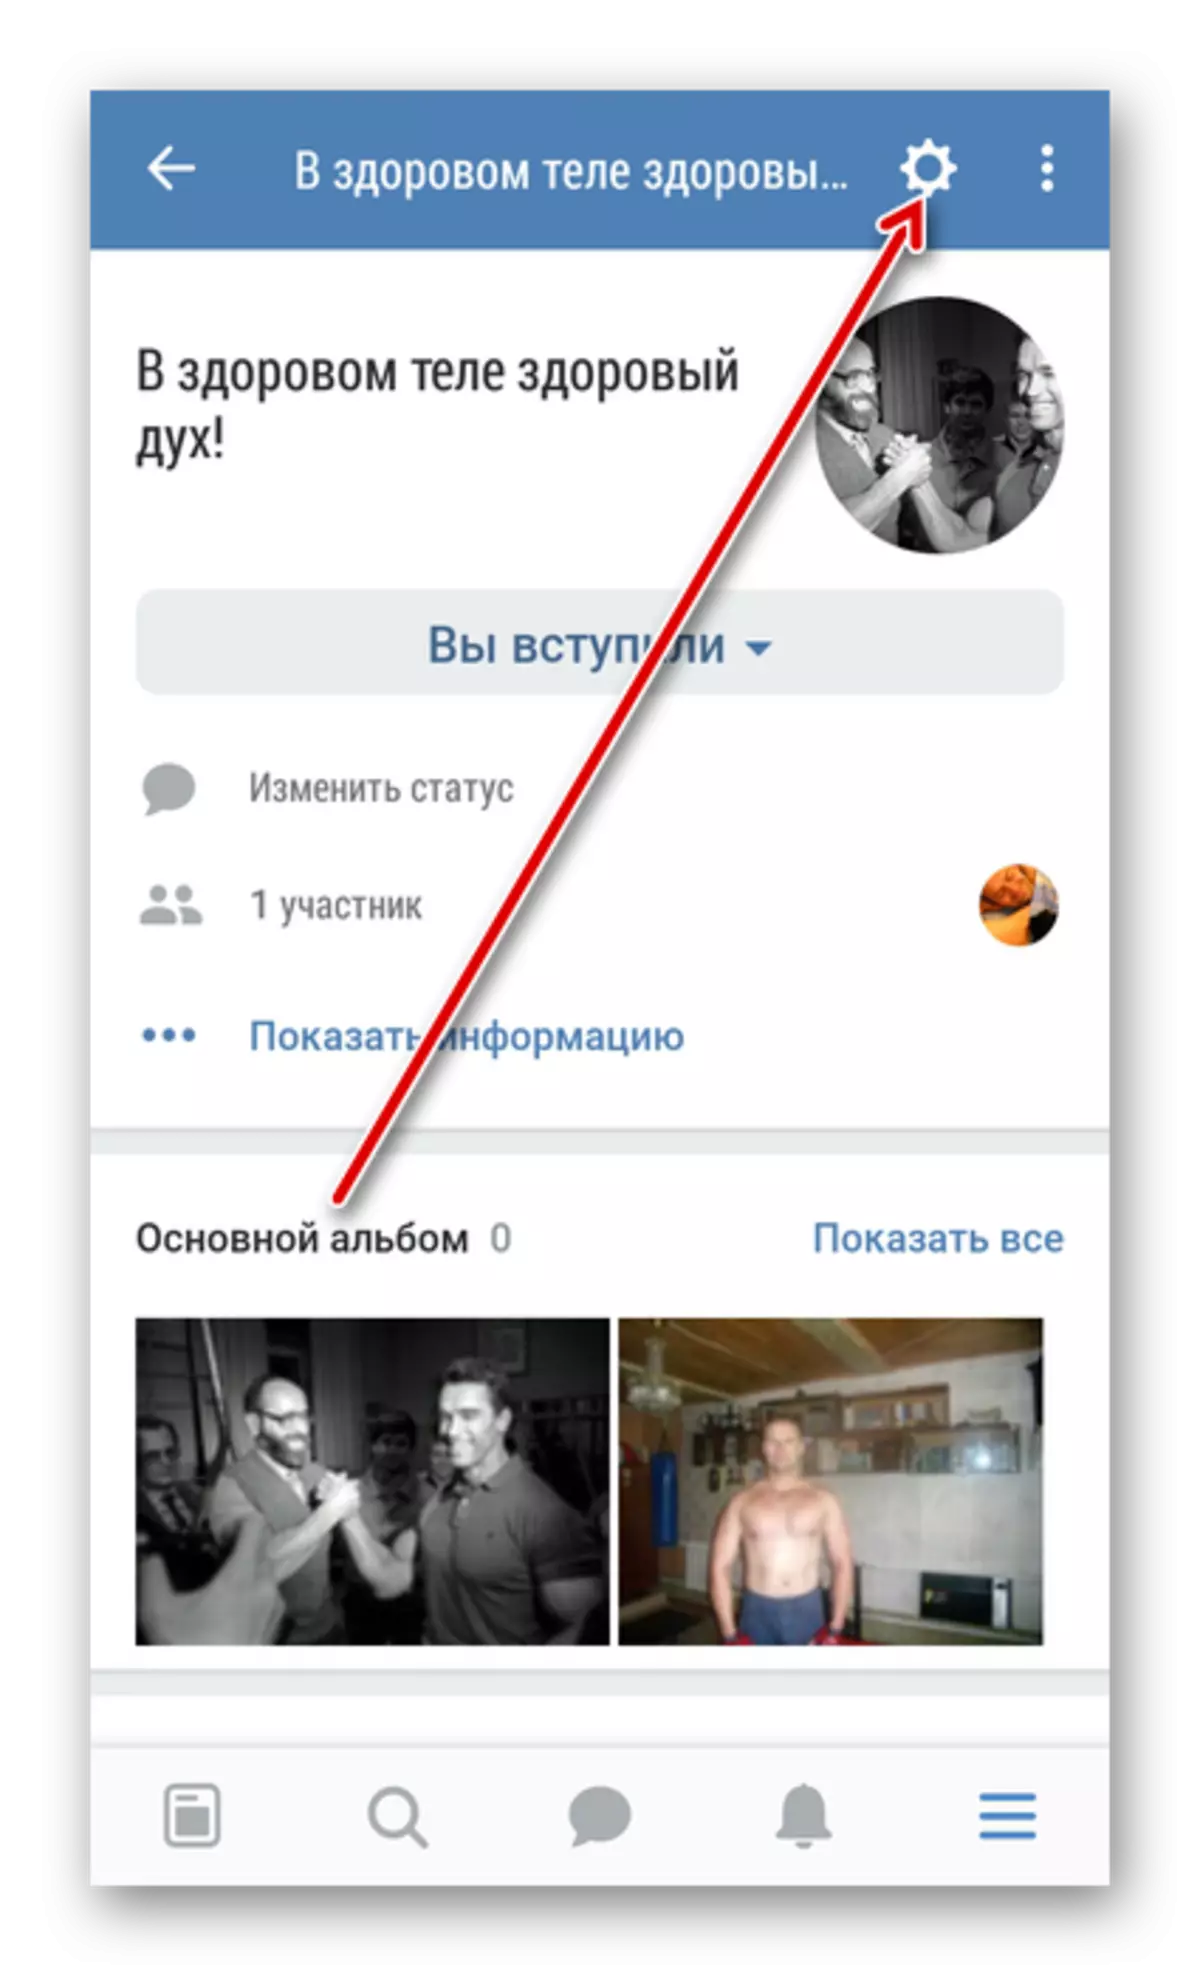 Mlebu menyang setelan klompok sampeyan ing VKontakte